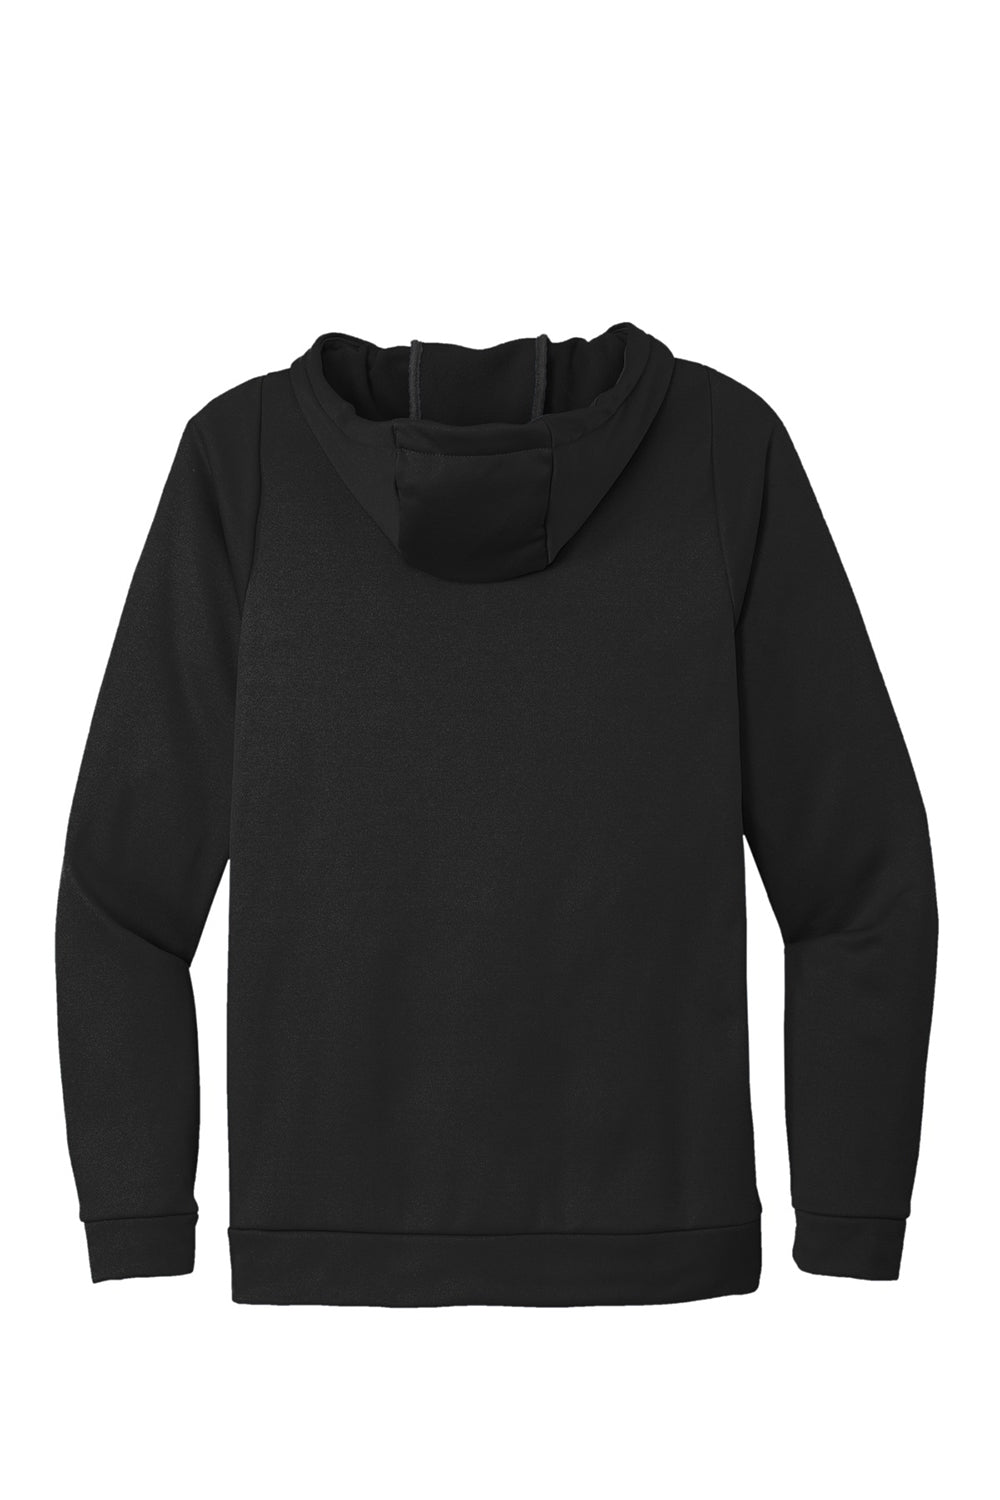 Nike CN9473 Mens Therma-Fit Moisture Wicking Fleece Hooded Sweatshirt Hoodie Team Black Flat Back